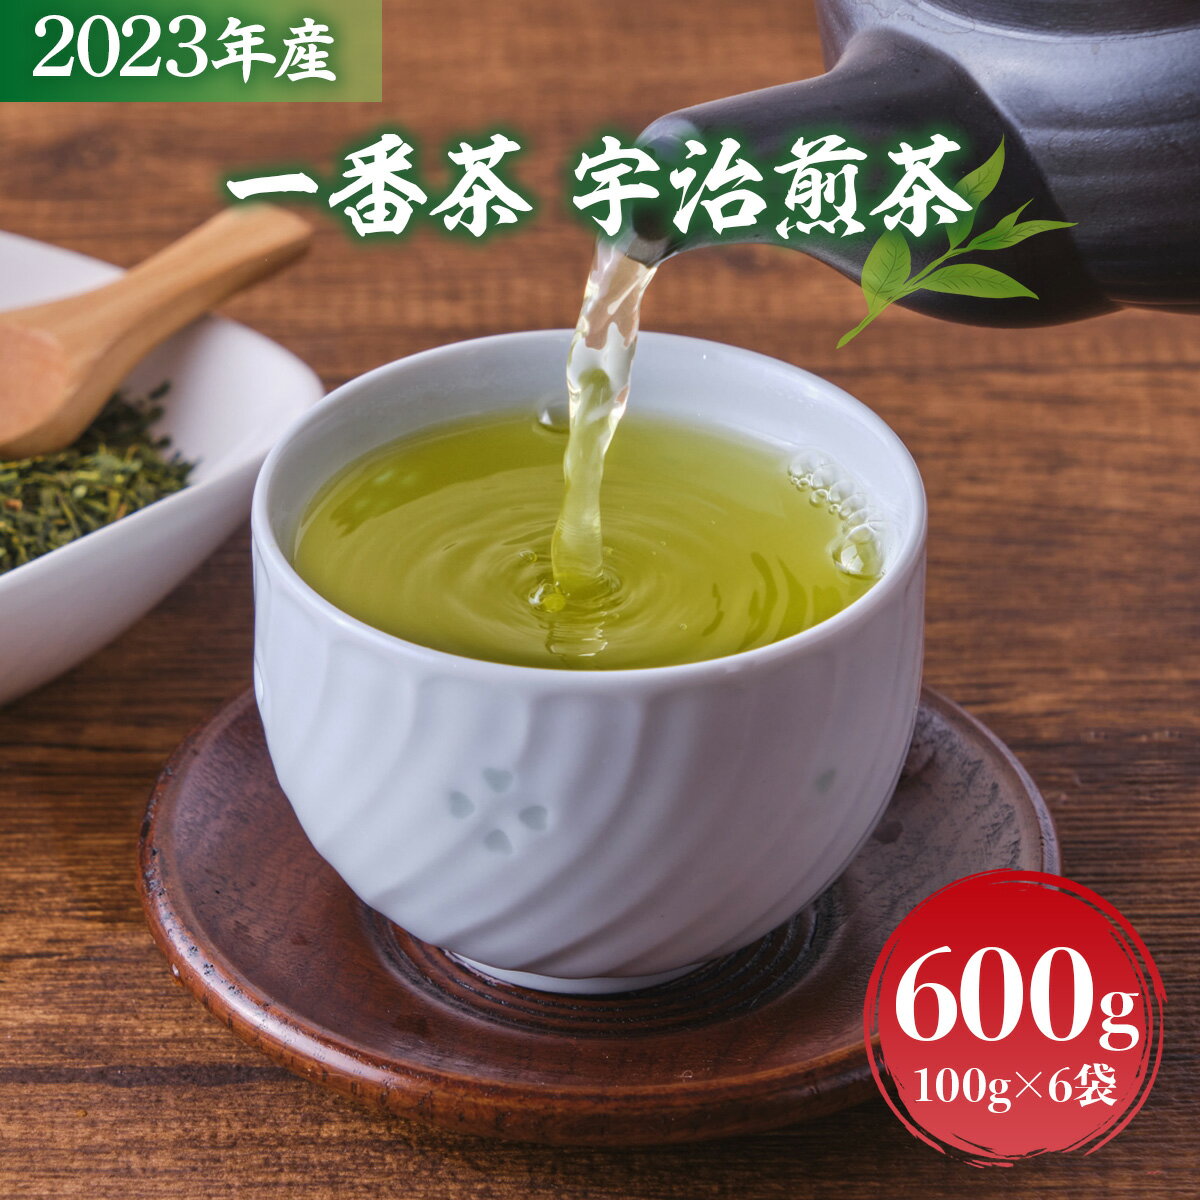 2023年産 一番茶 宇治煎茶600g 100g×6袋 送料無料 お茶 宇治茶 煎茶 緑茶 AG05